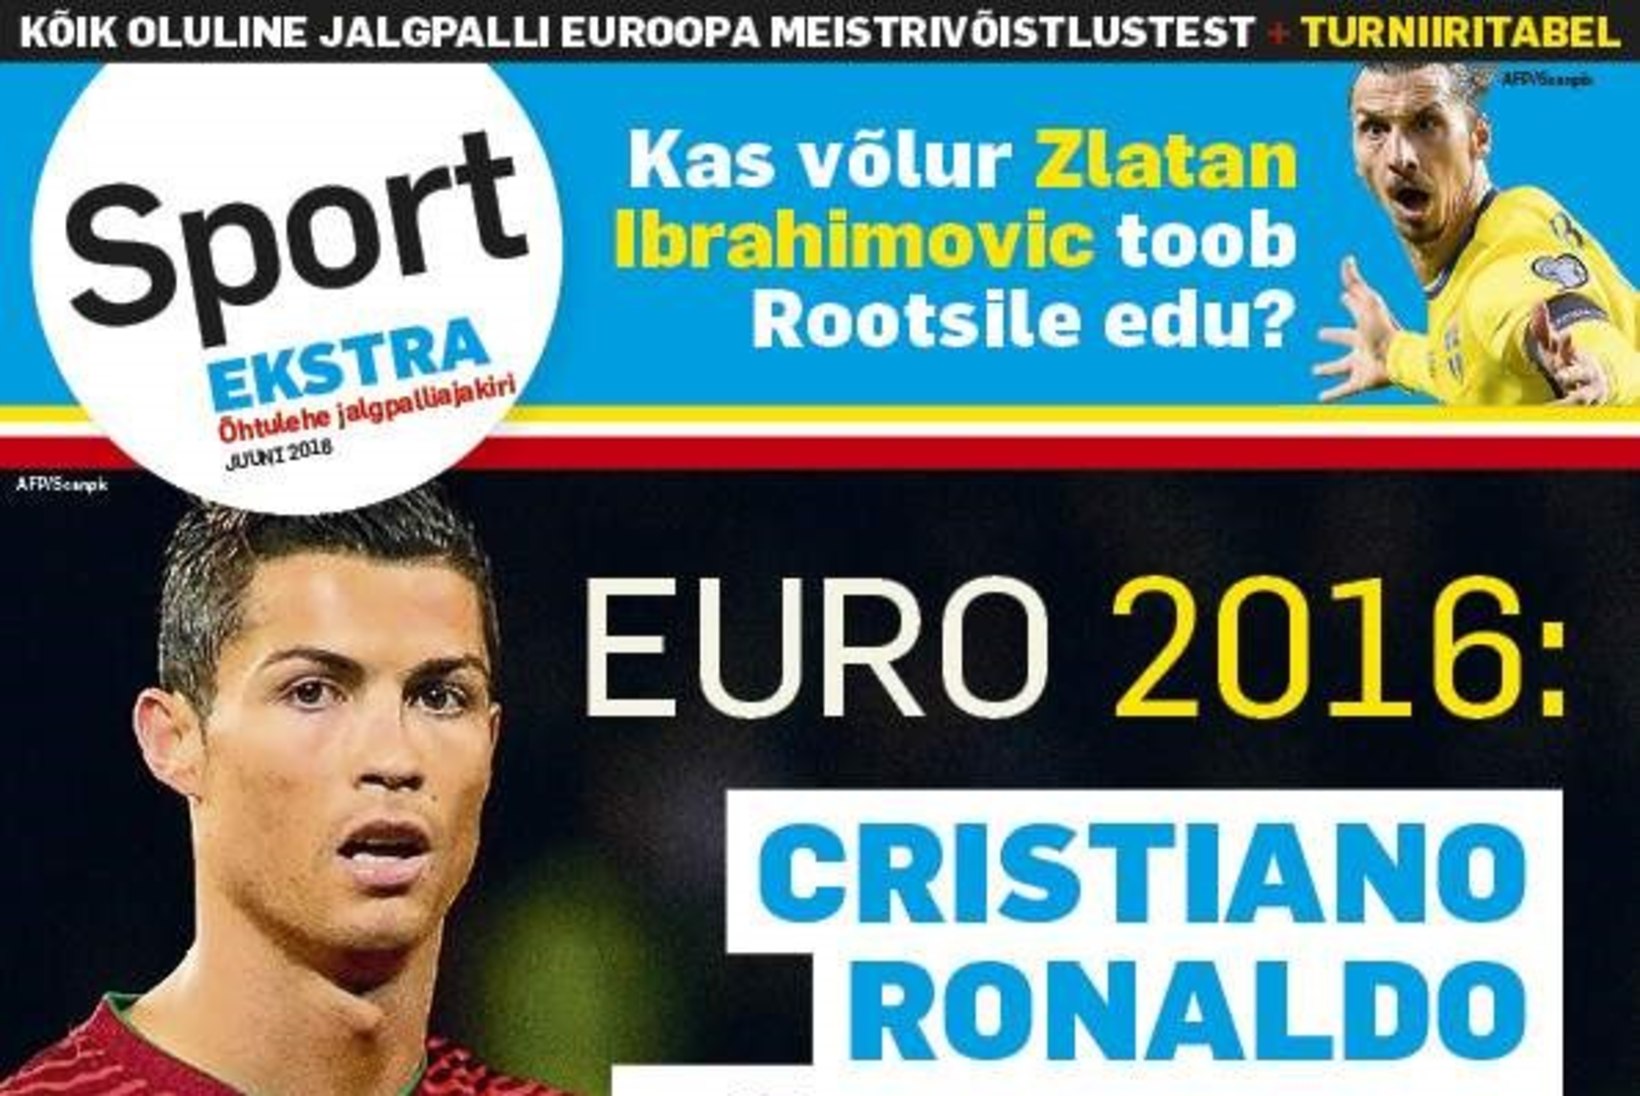 TÄISMAHUS! "Ronaldost õhkub enesekindlust, mitte ülbust." Õhtulehe jalgpalliajakirja kaanelugu Cristiano Ronaldost!